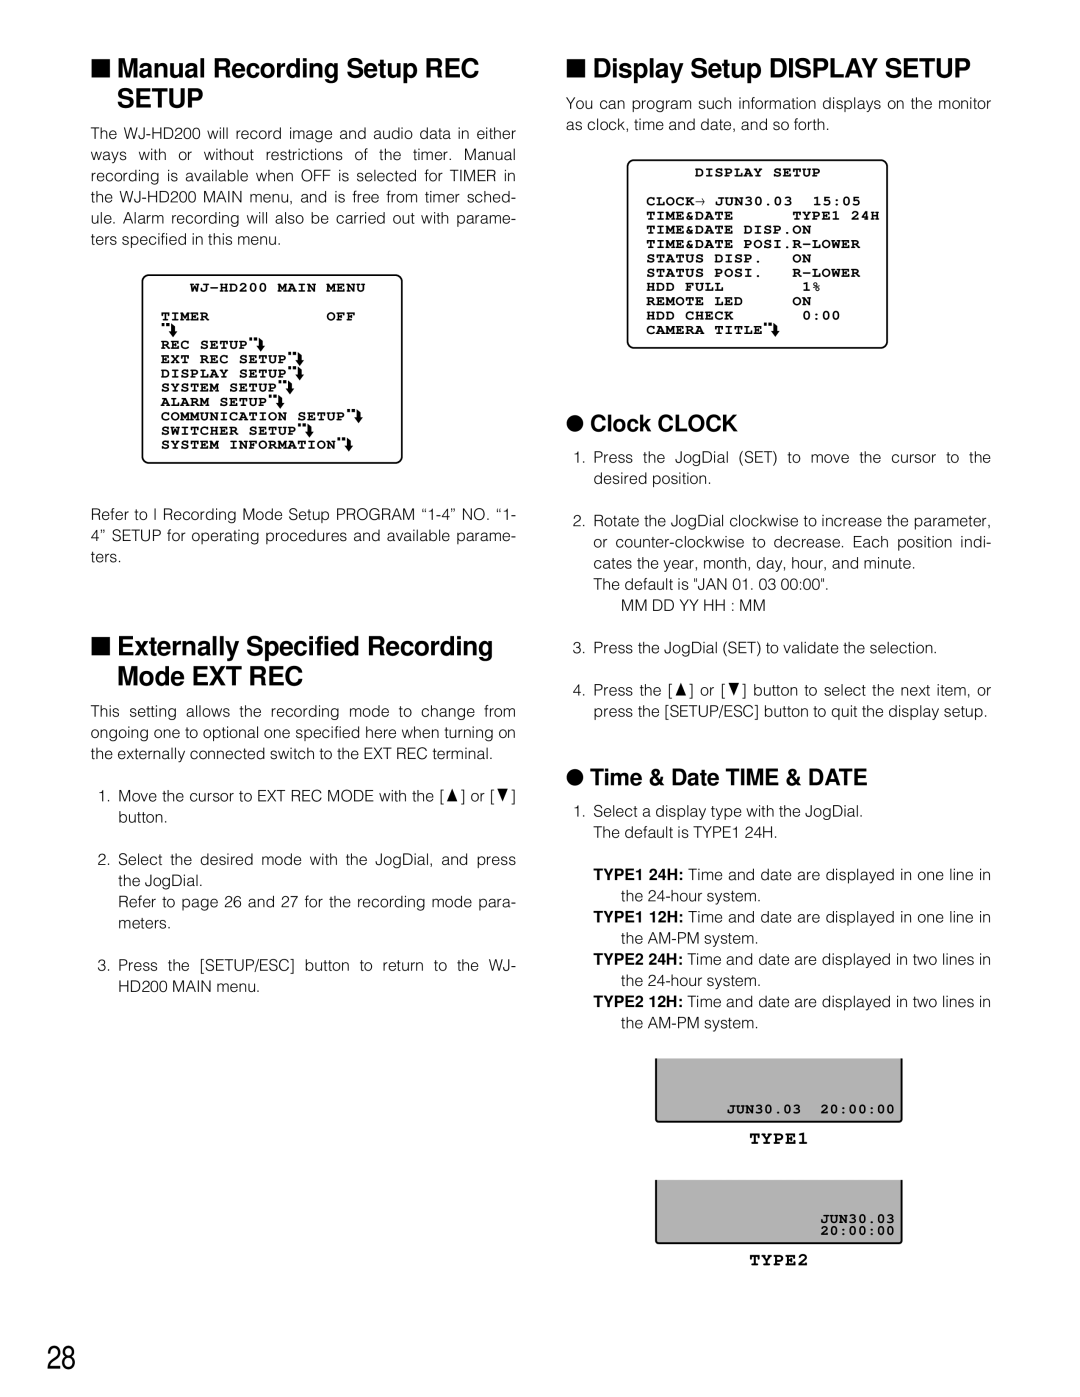 Panasonic WJ-HD200 manual Manual Recording Setup REC SETUP, Externally Specified Recording Mode EXT REC, Clock CLOCK, TYPE1 